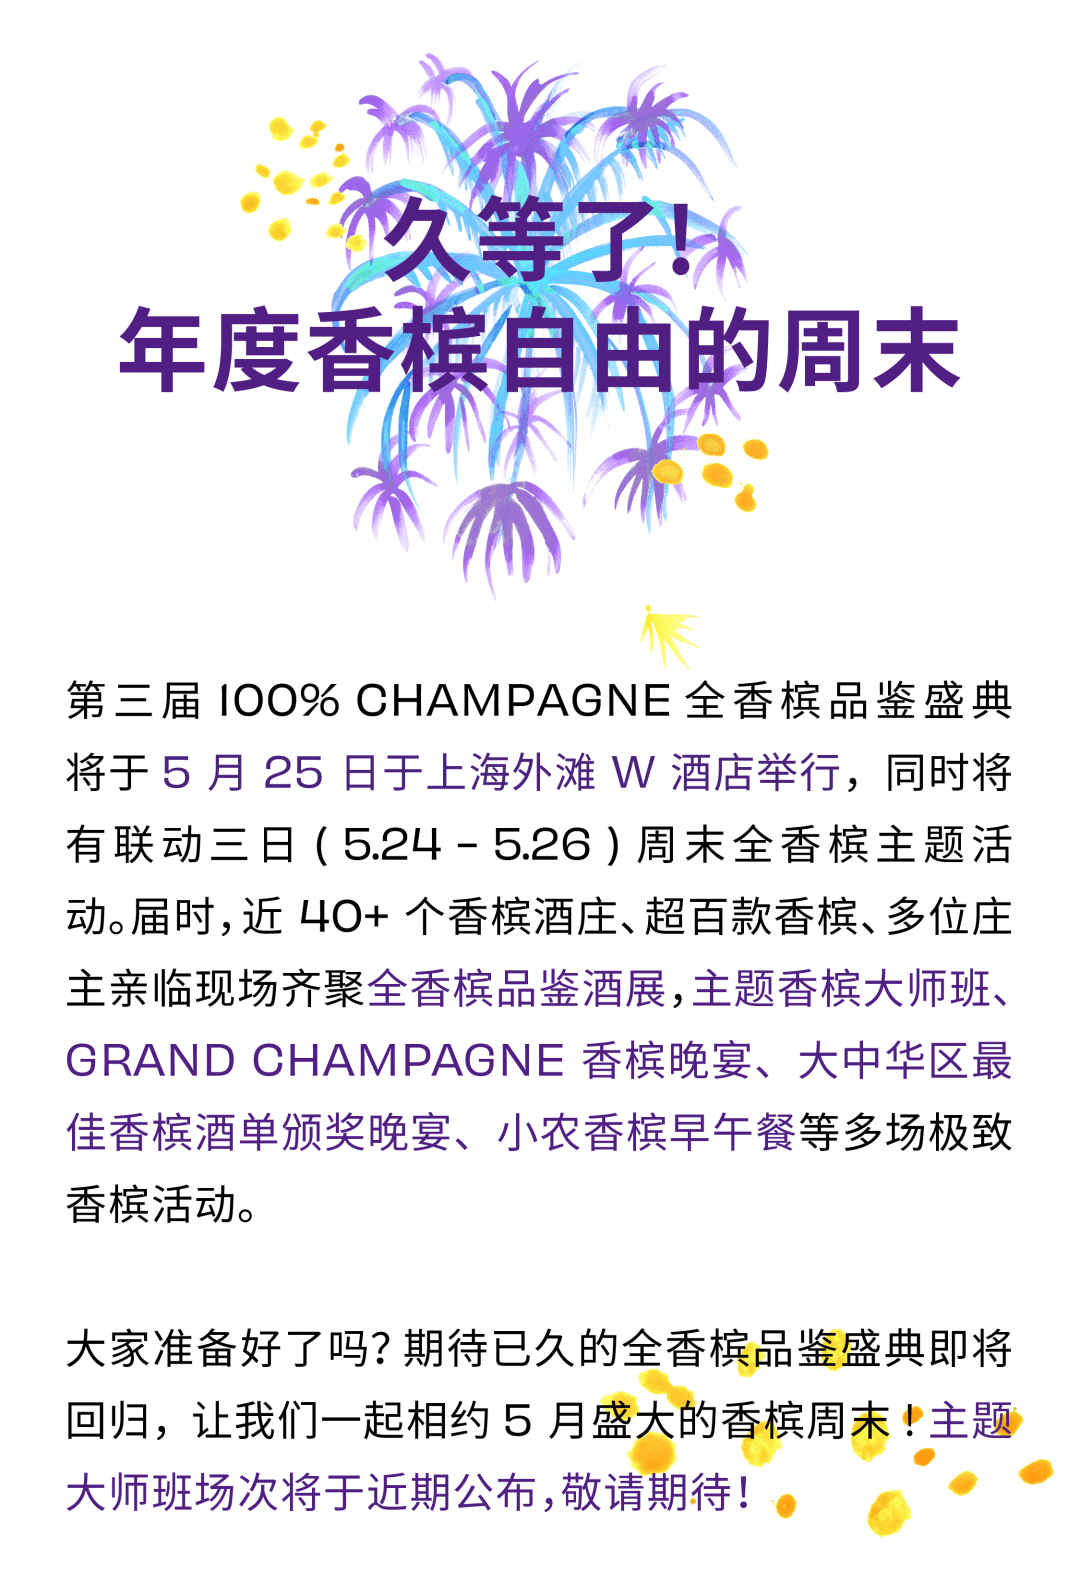 100% CHAMPAGNE China 2024，属于香槟客的周末狂欢！